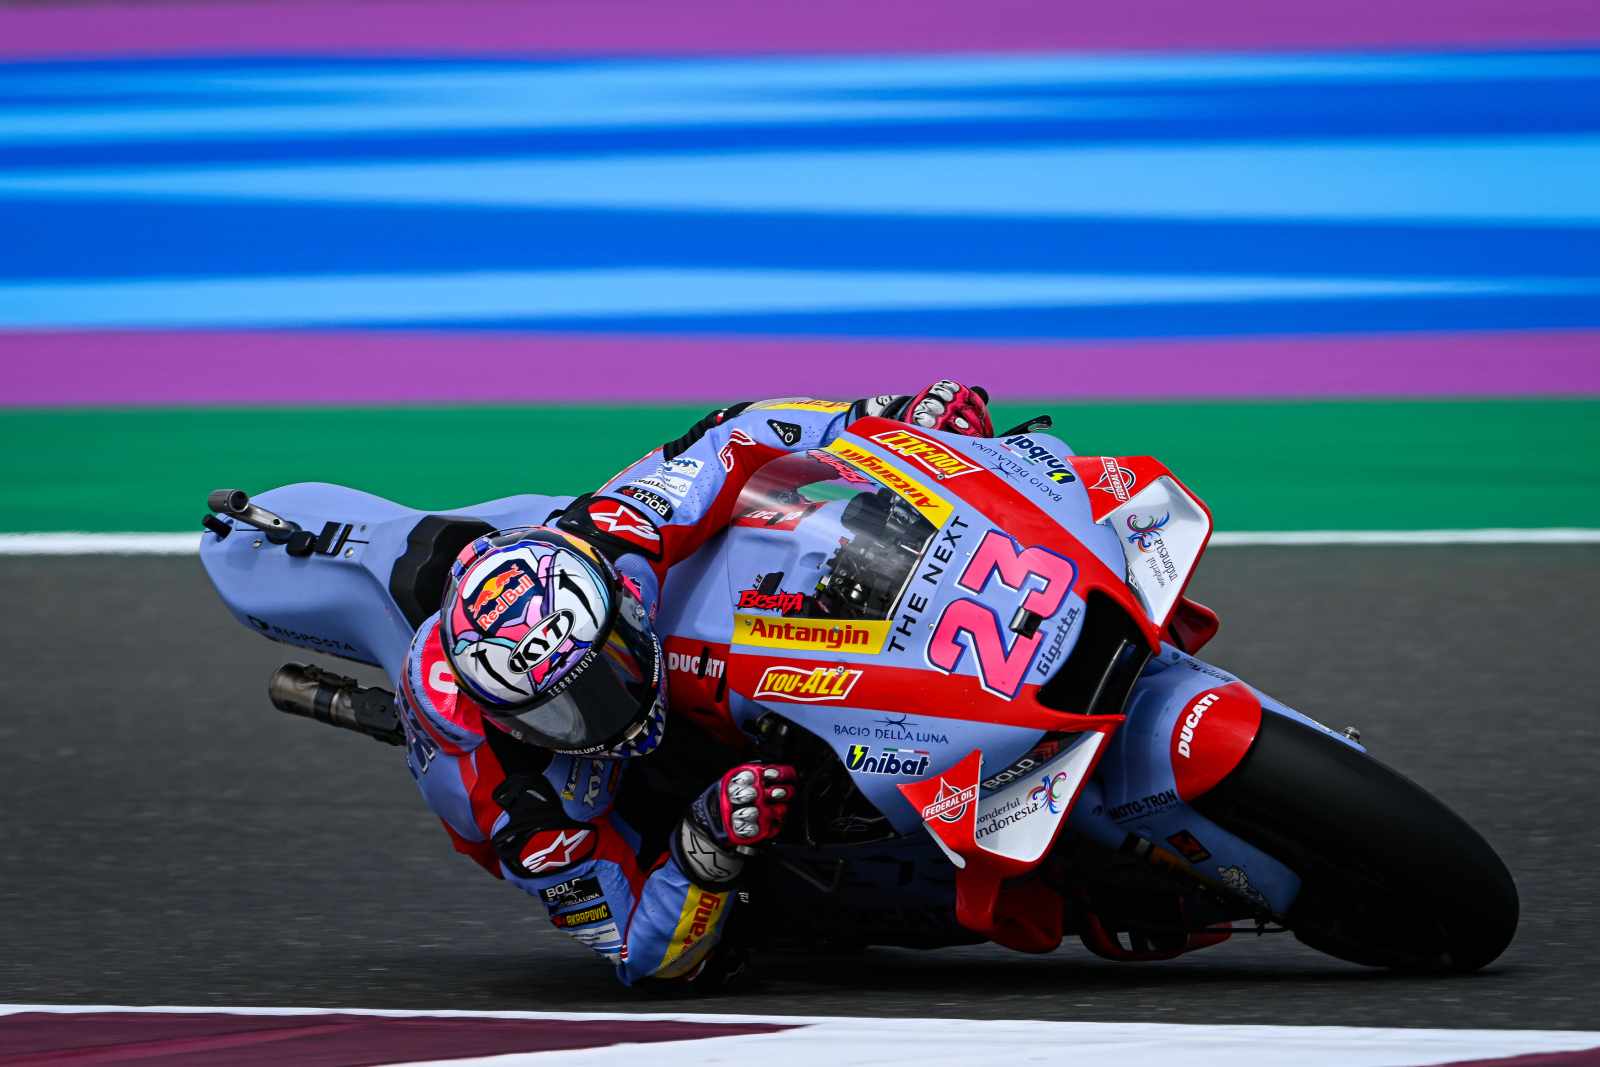 MotoGP 2022: Corrida de abertura será dia 06/03 no Catar - moto.com.br